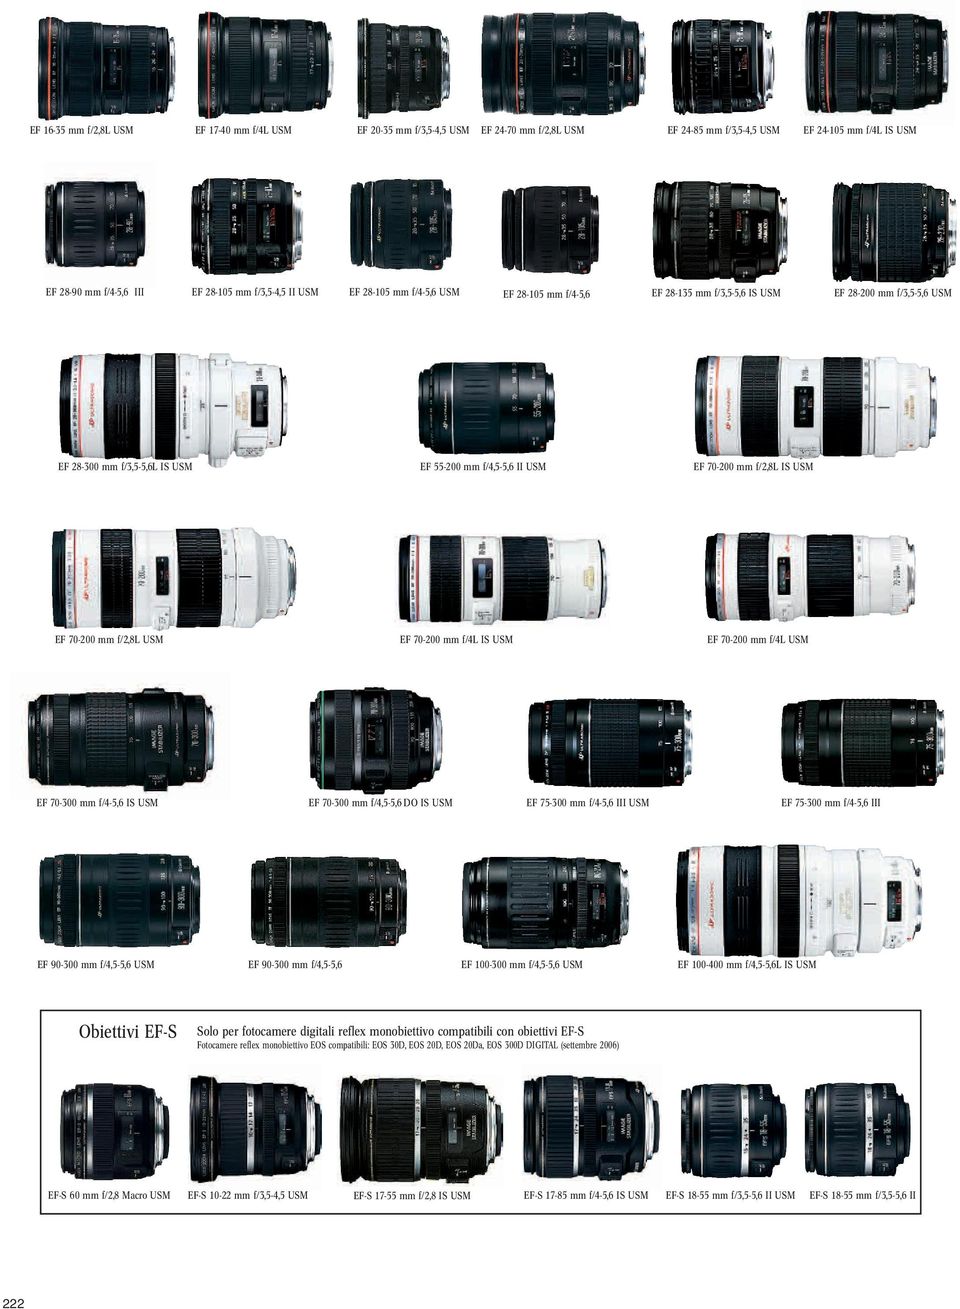 mm f/-, III EF 9- mm f/,-, USM EF 9- mm f/,-, EF - mm f/,-, USM EF - mm f/,-,l IS USM biettivi EF-S Solo per fotocamere digitali reflex monobiettivo compatibili con obiettivi EF-S Fotocamere reflex